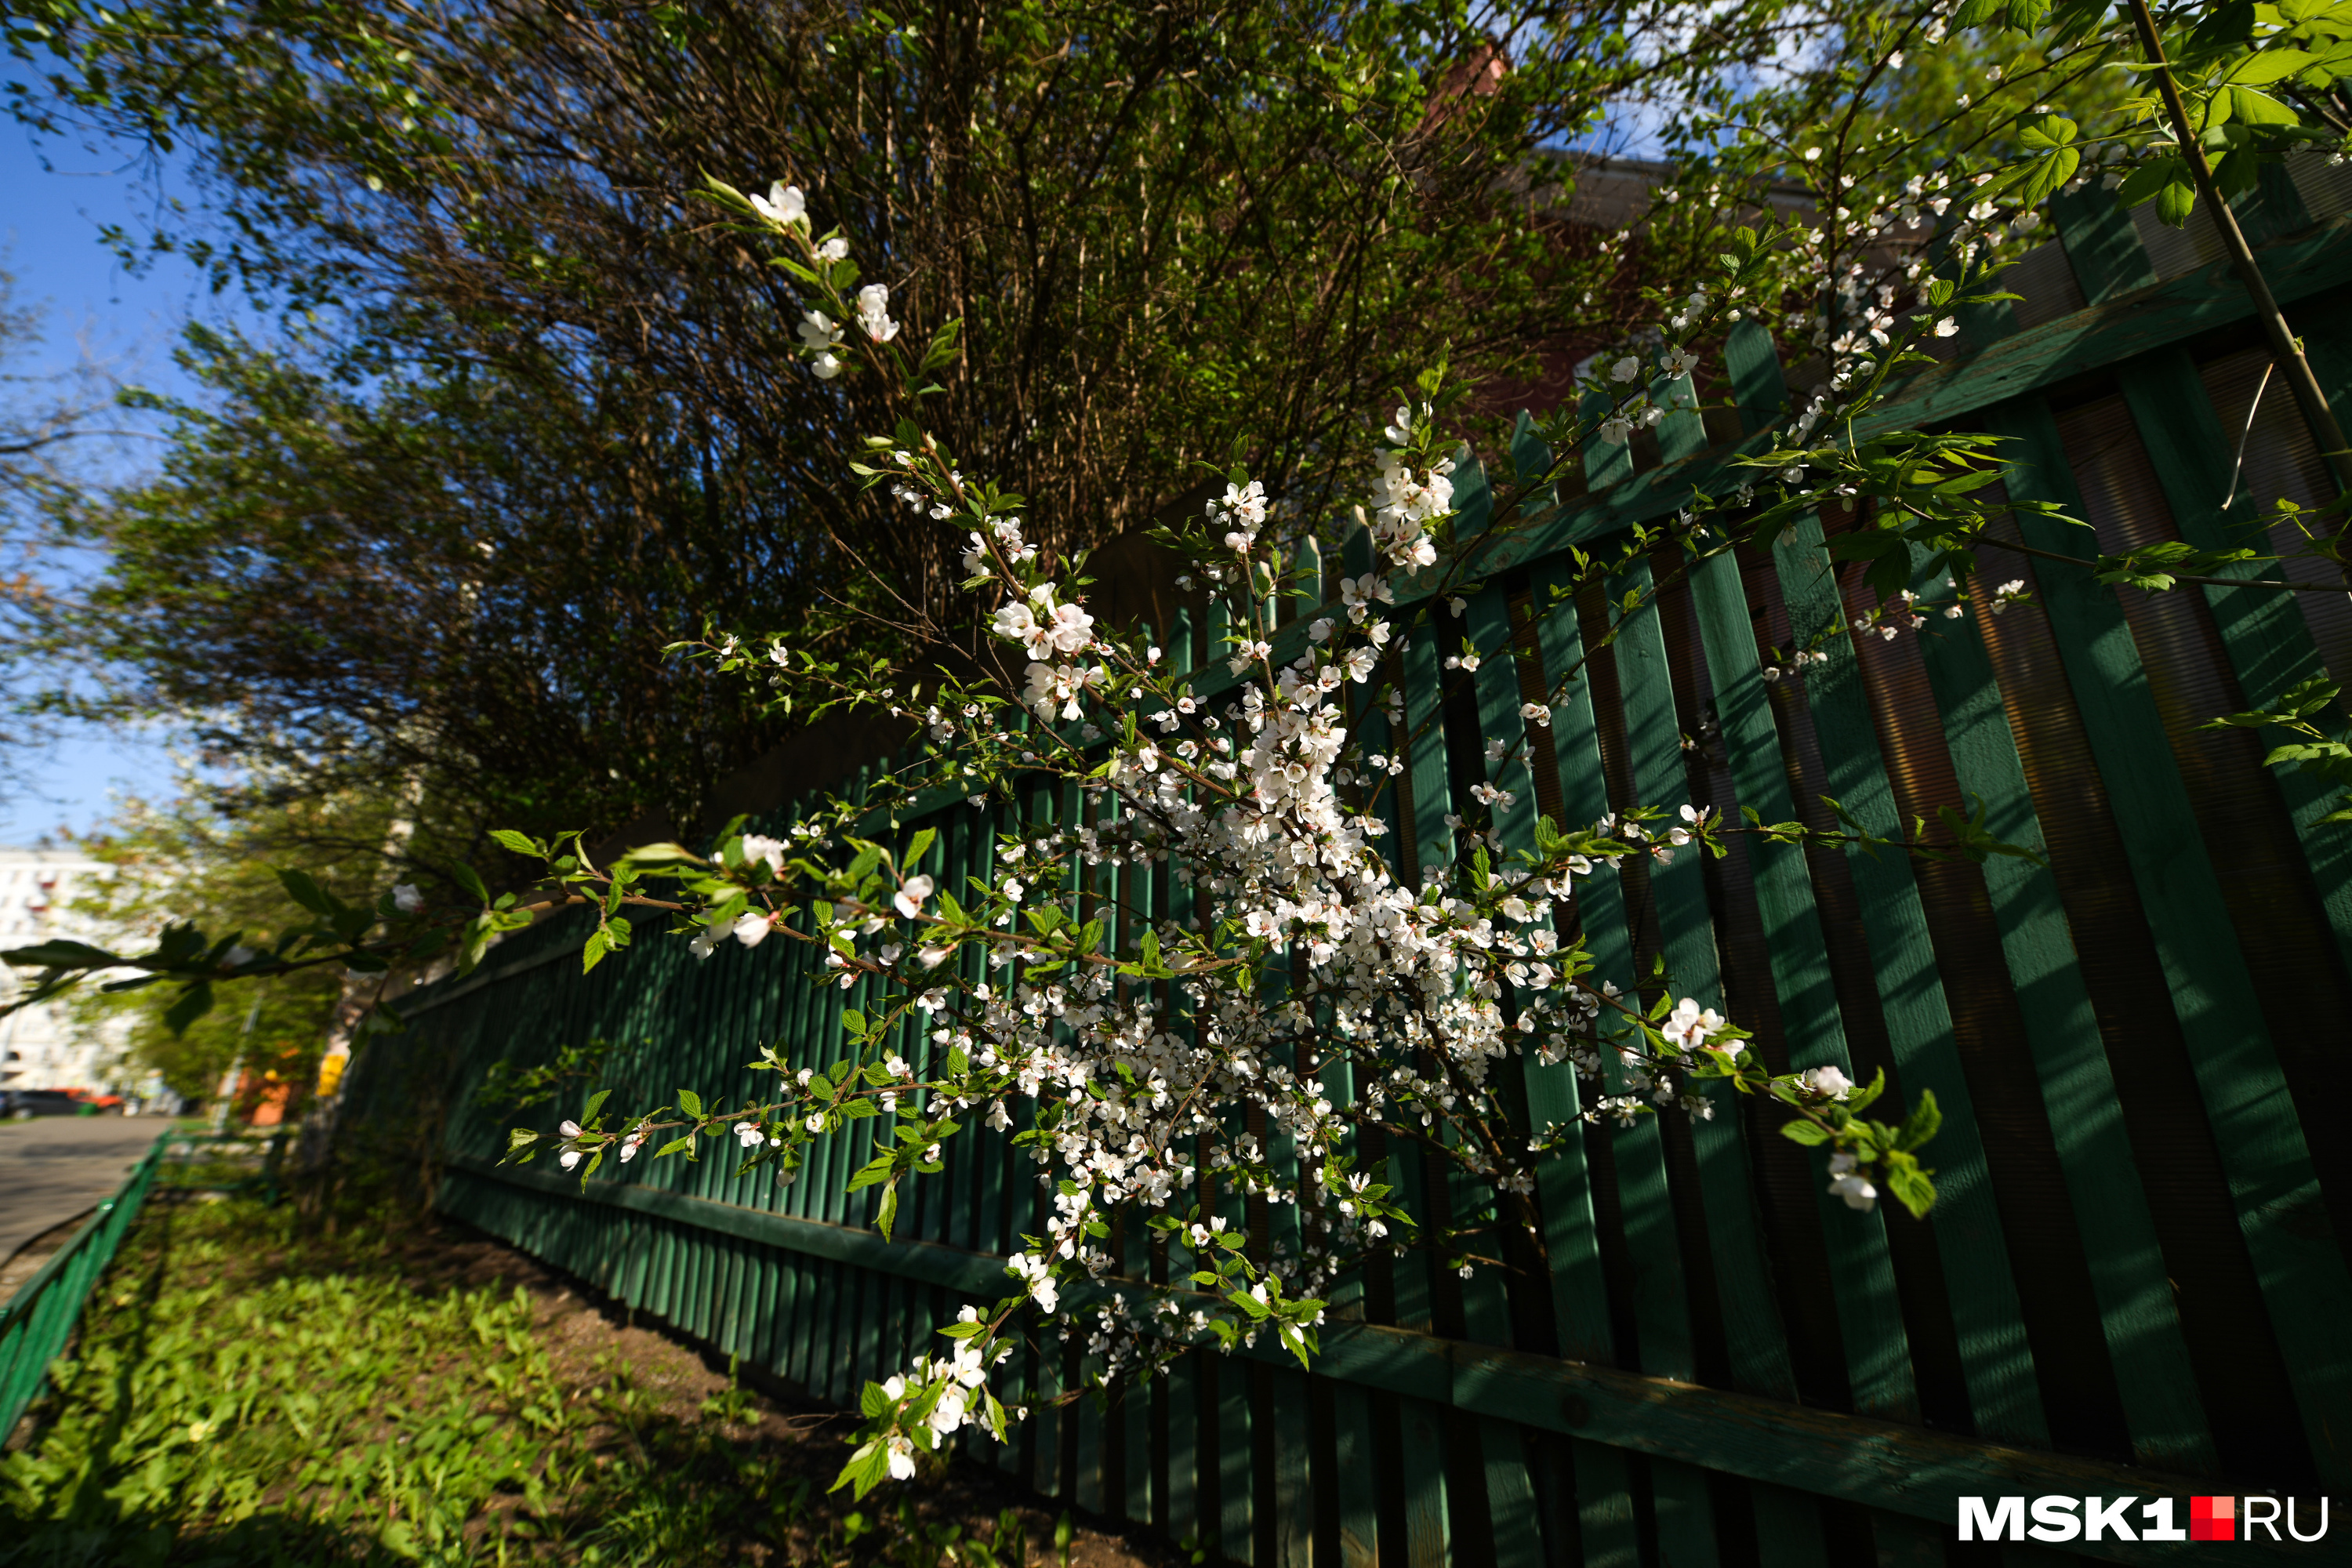 Во дворе у Быковых расцветают яблони и груши